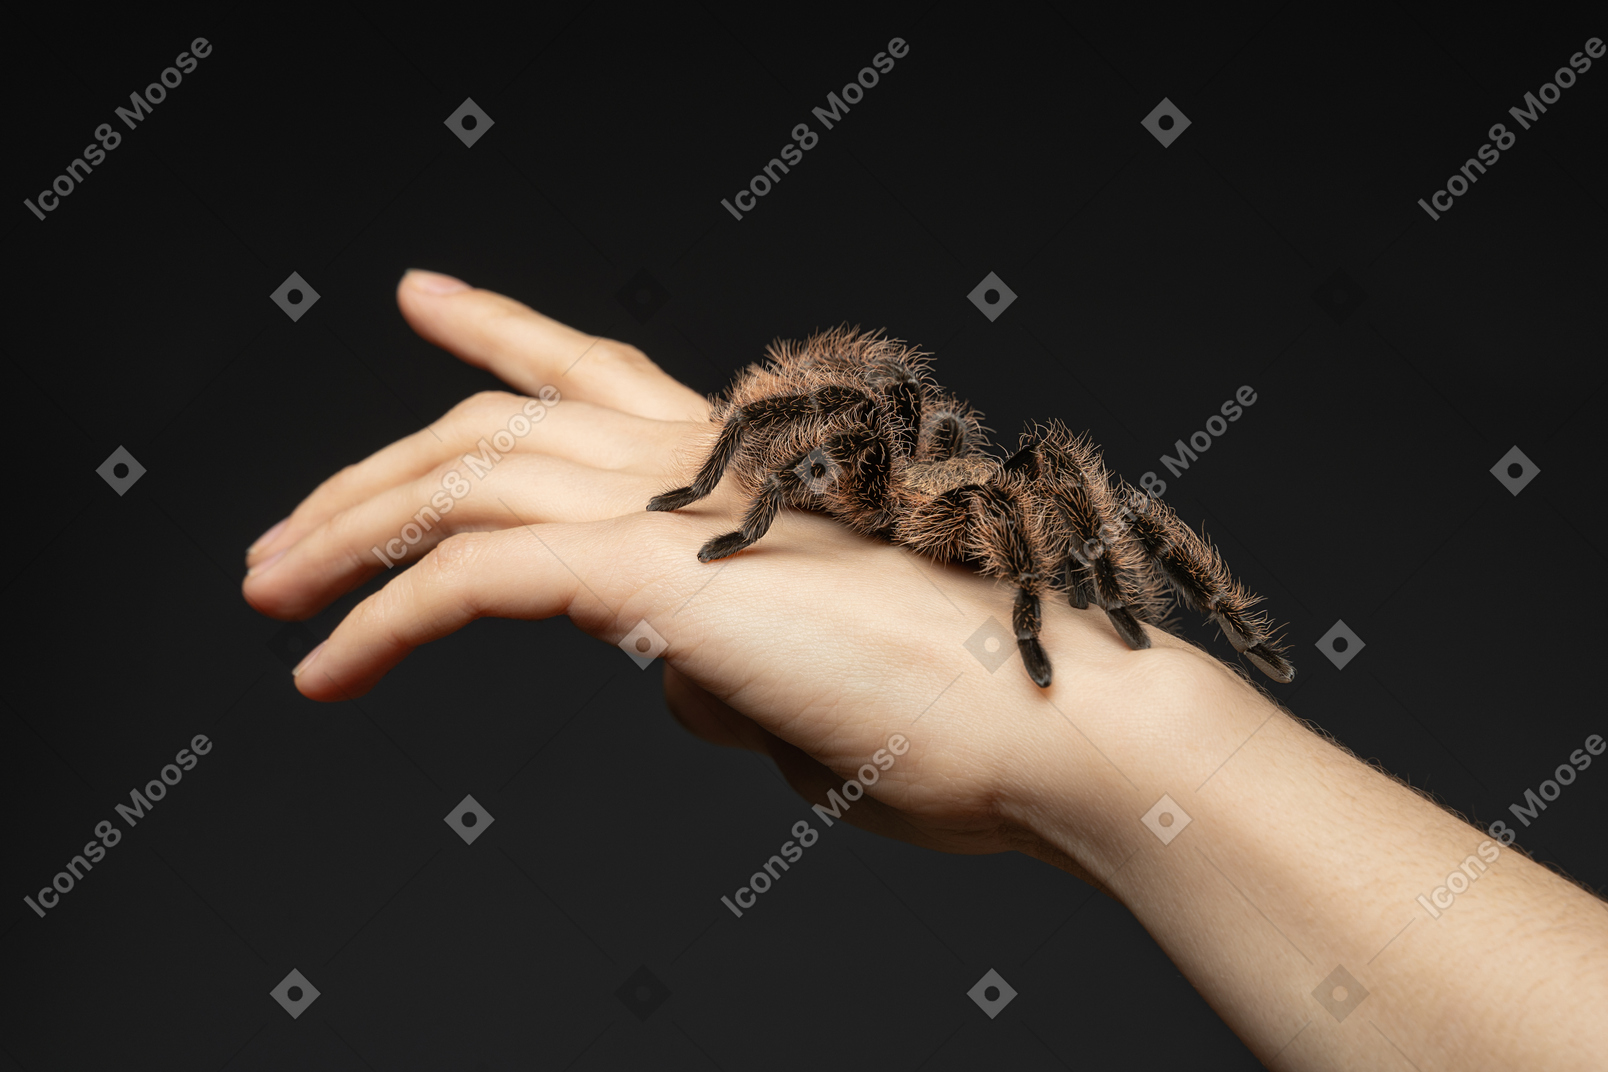 Spinne auf einer menschlichen hand